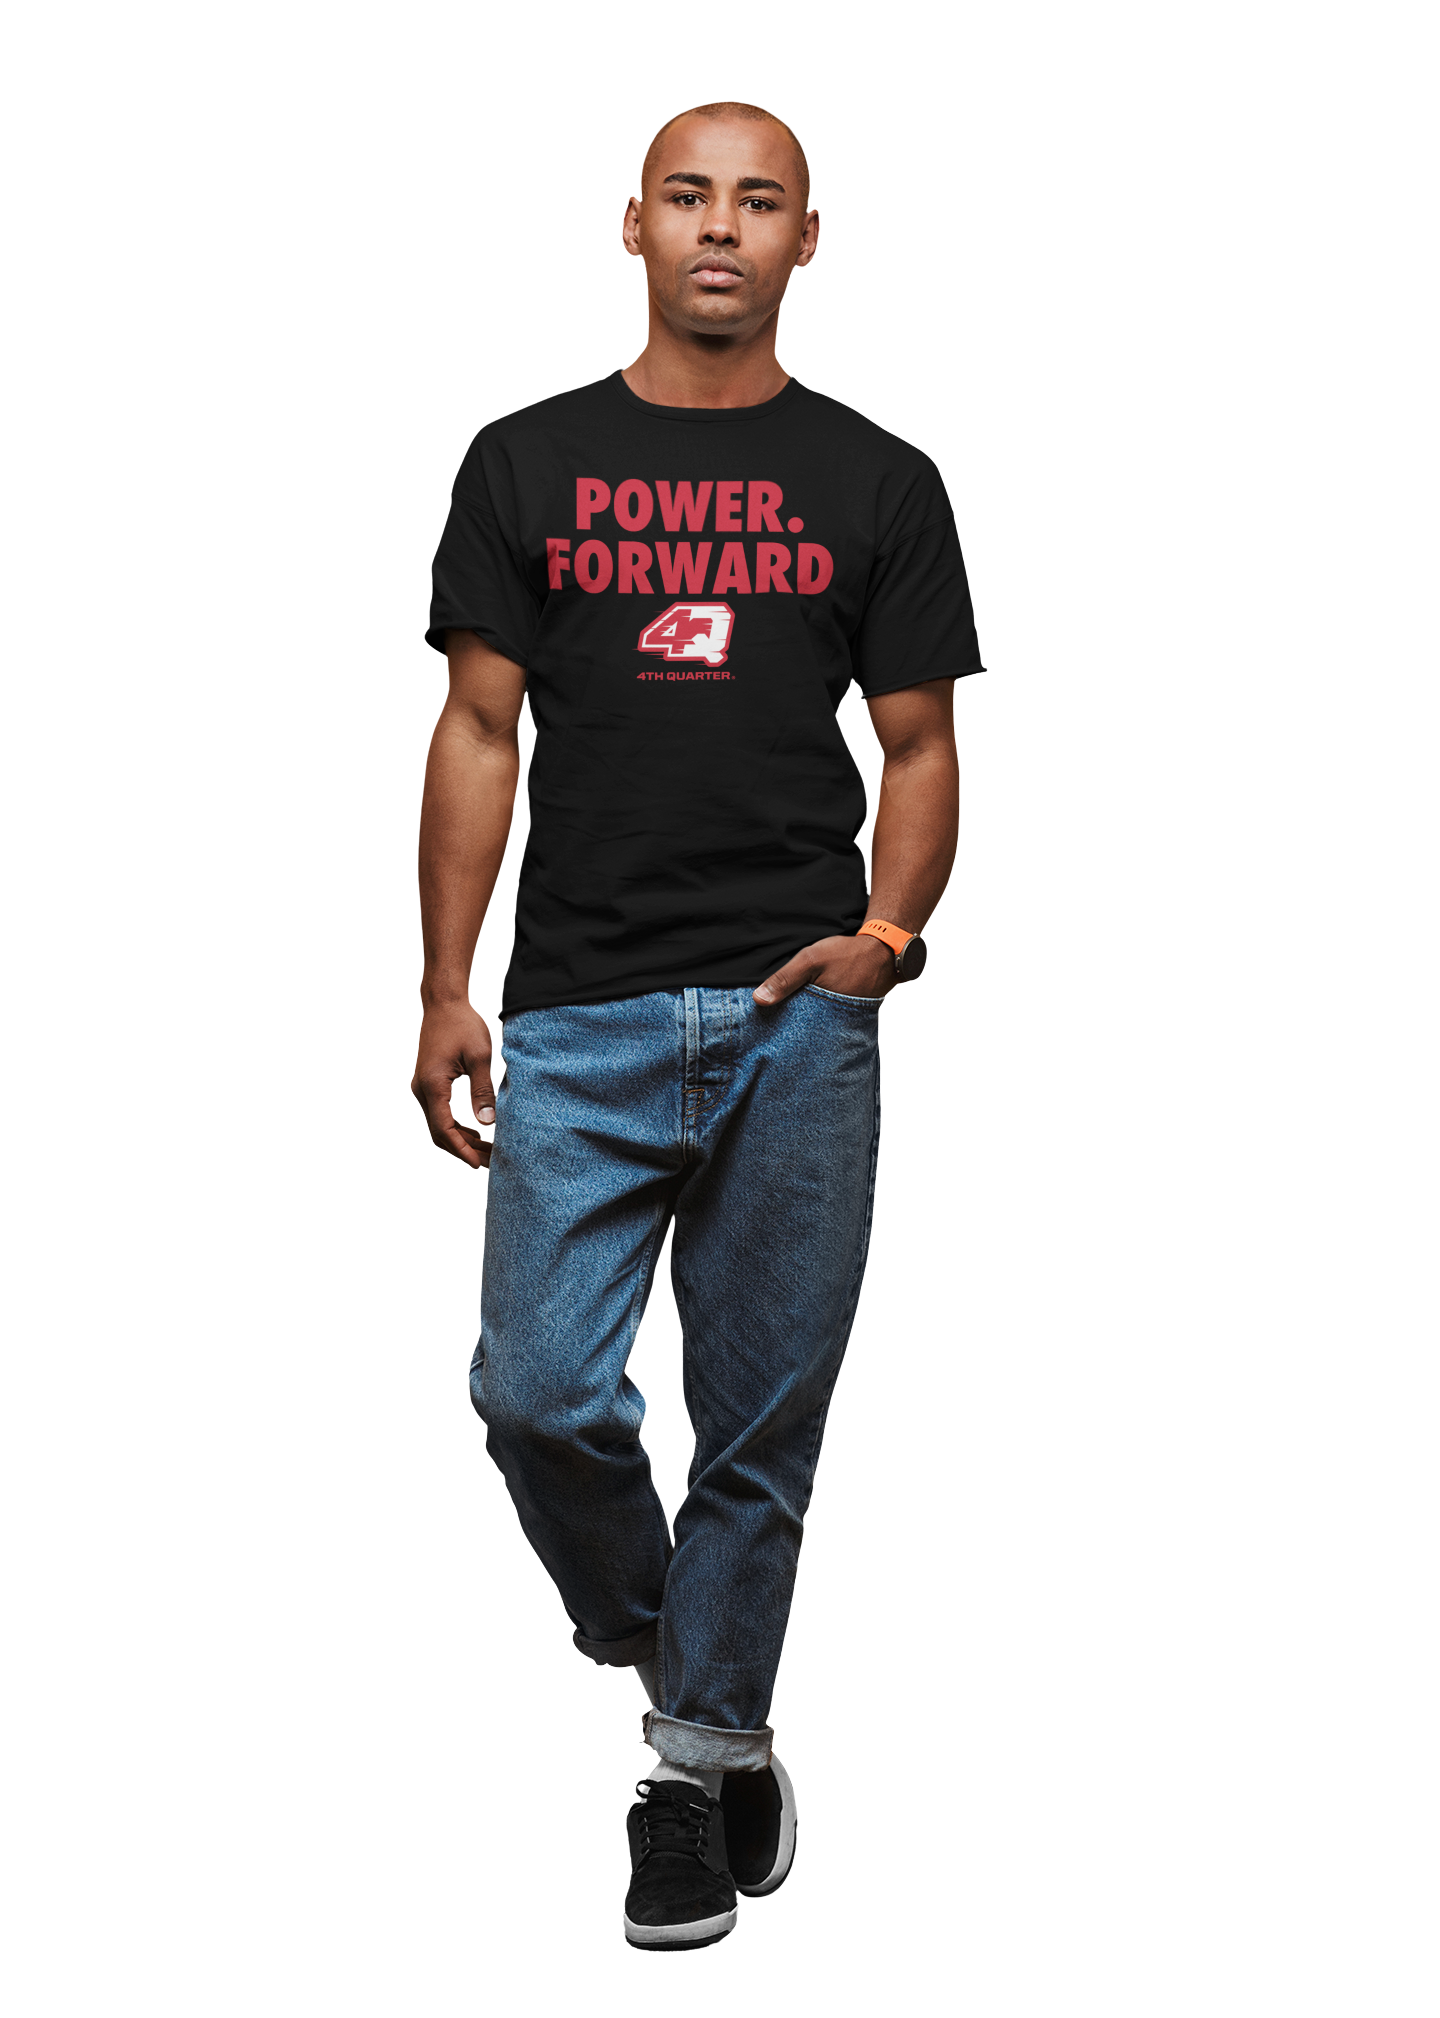 4th Quarter Power. Forward T-Shirt